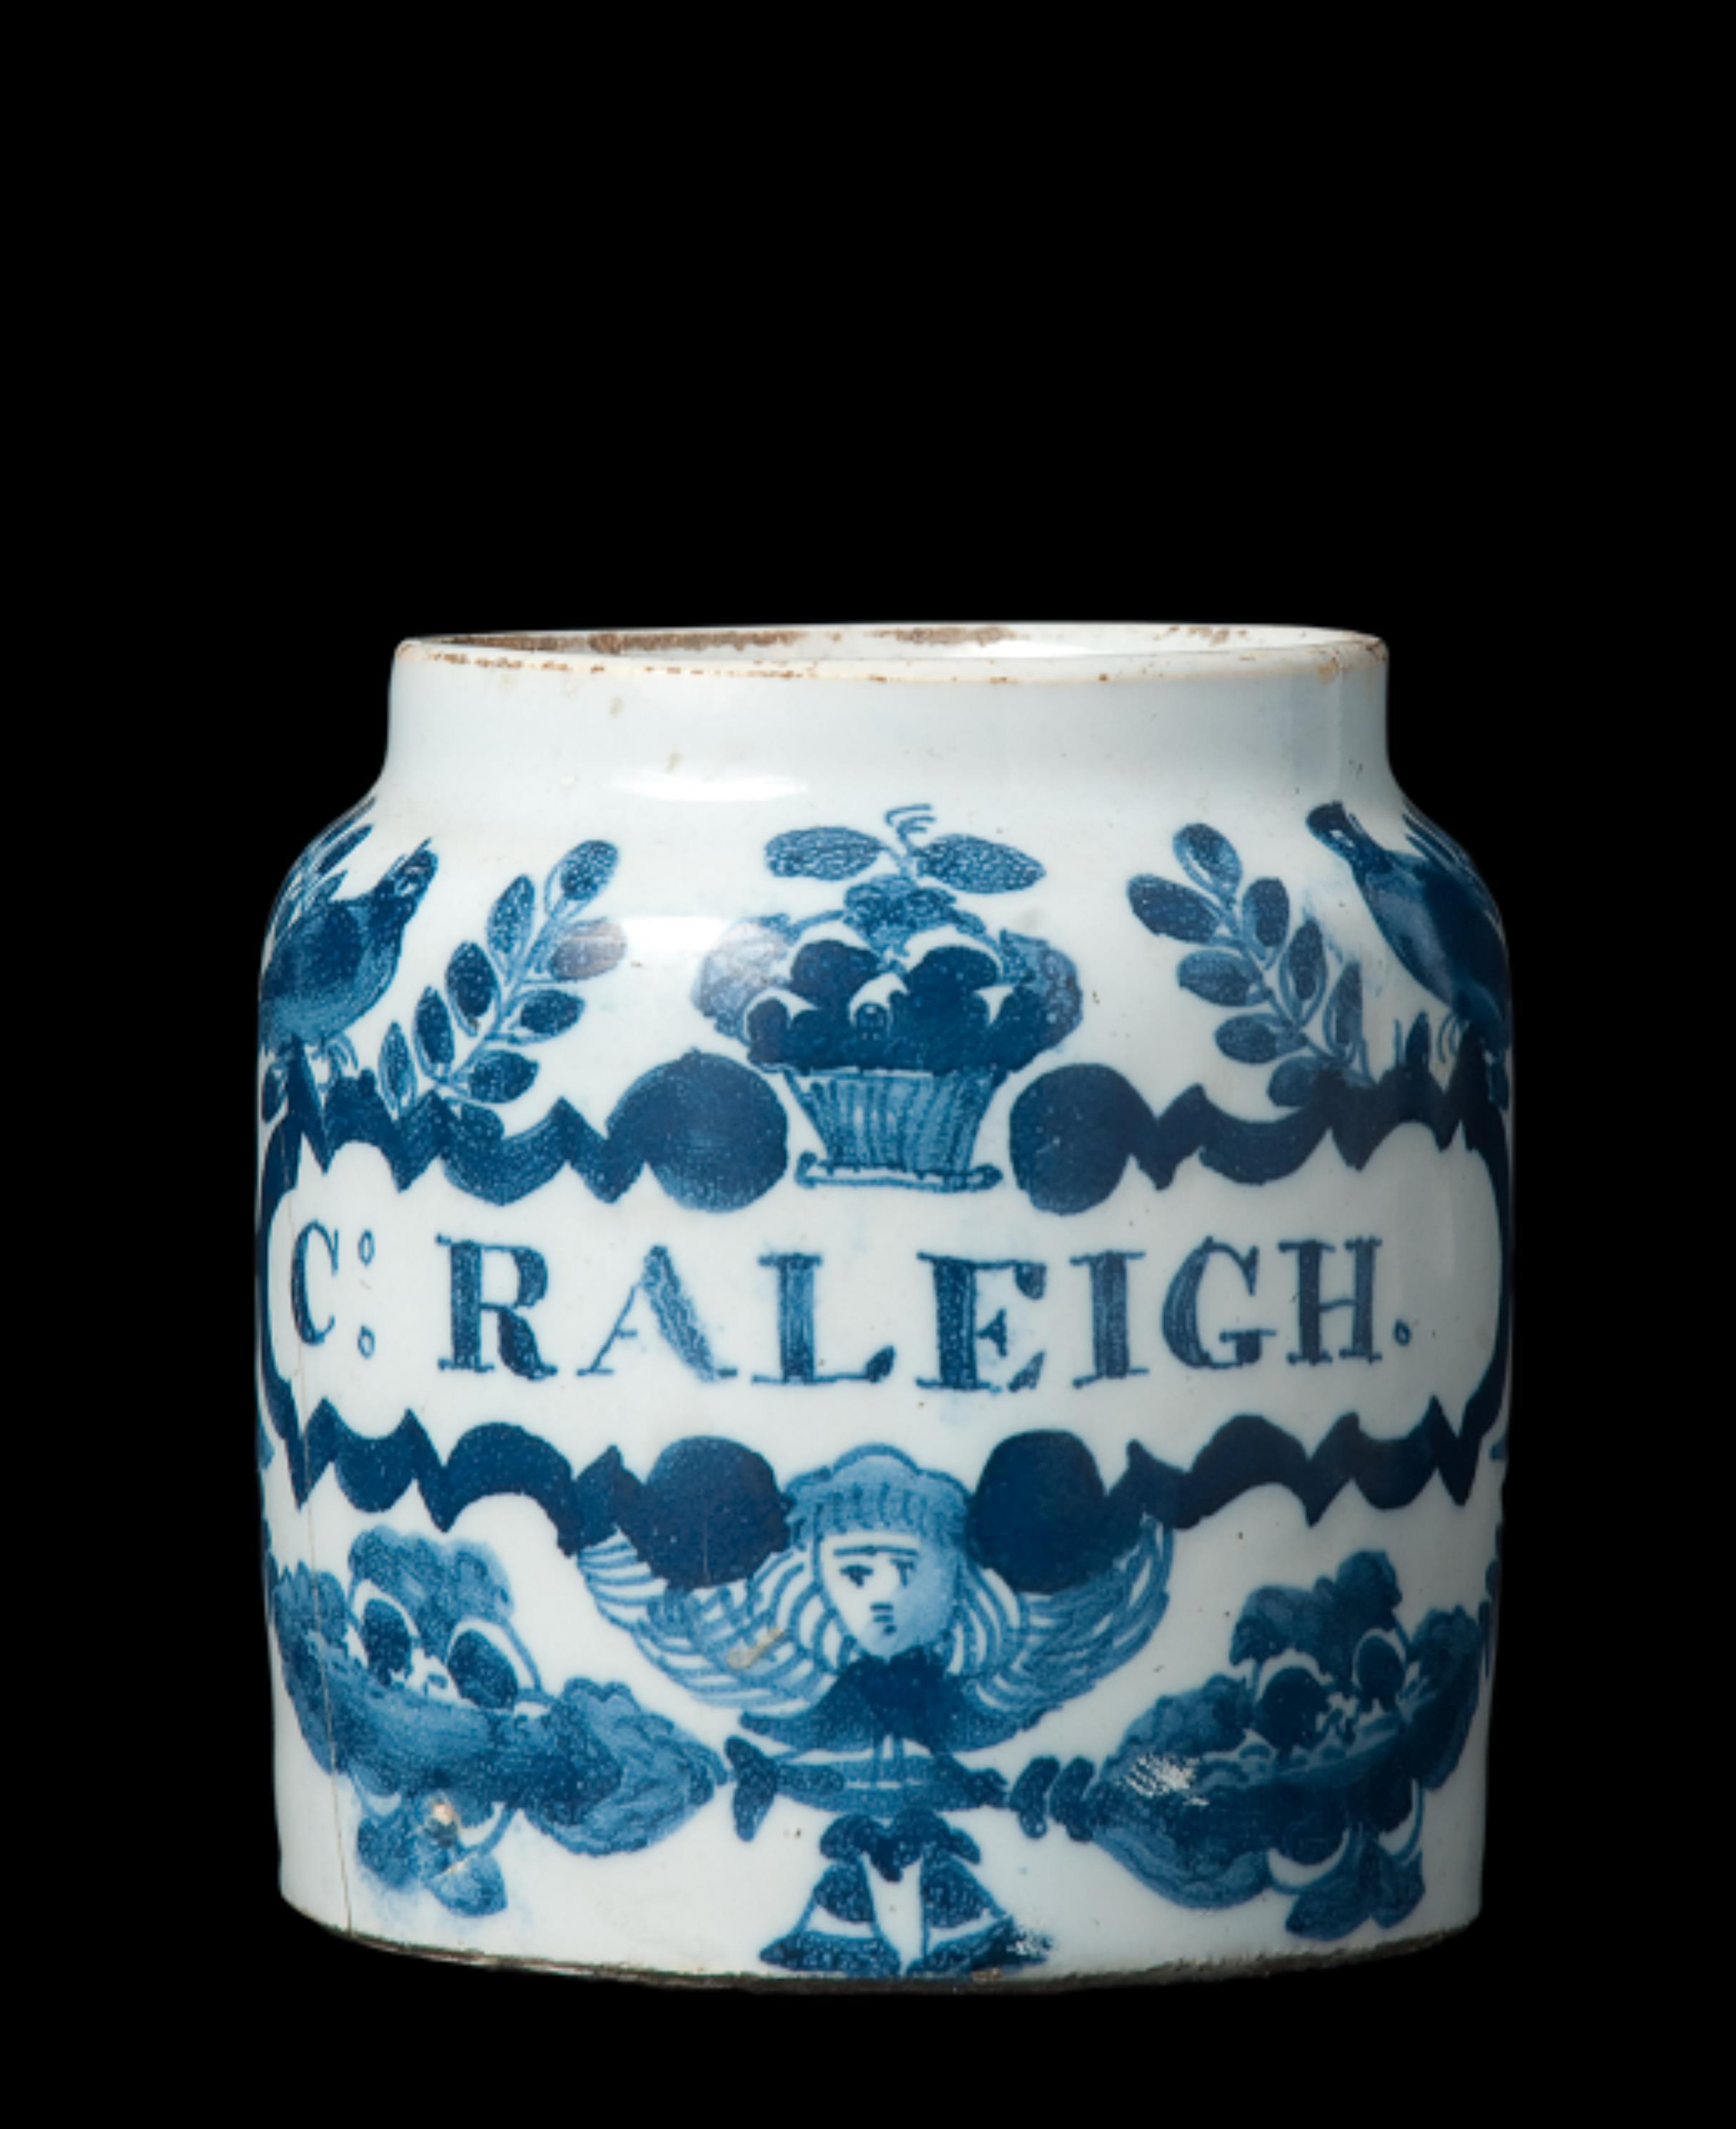 Apothecary jar. C. Raleigh inscription.